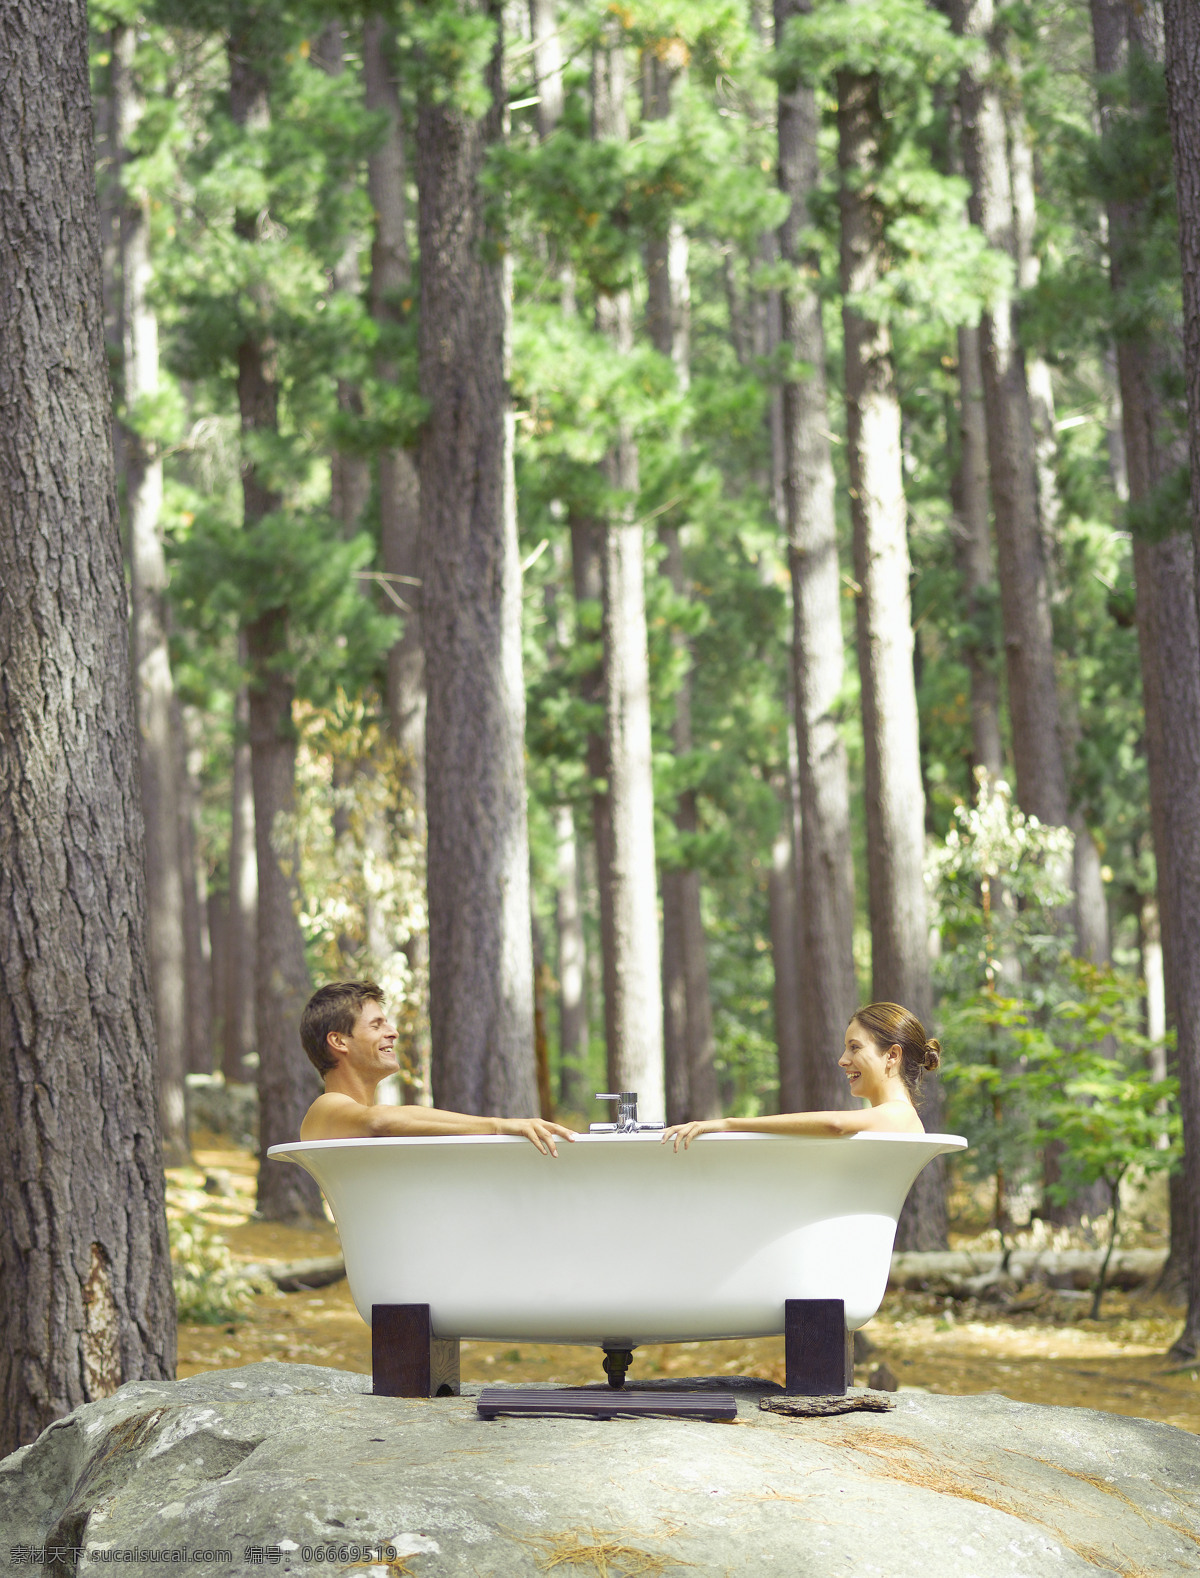 坐在 浴缸 里 情侣 户外 户外生活 人物 树林 自然 好环境 洗澡 对视 微笑 鸳鸯浴 生活人物 人物图片